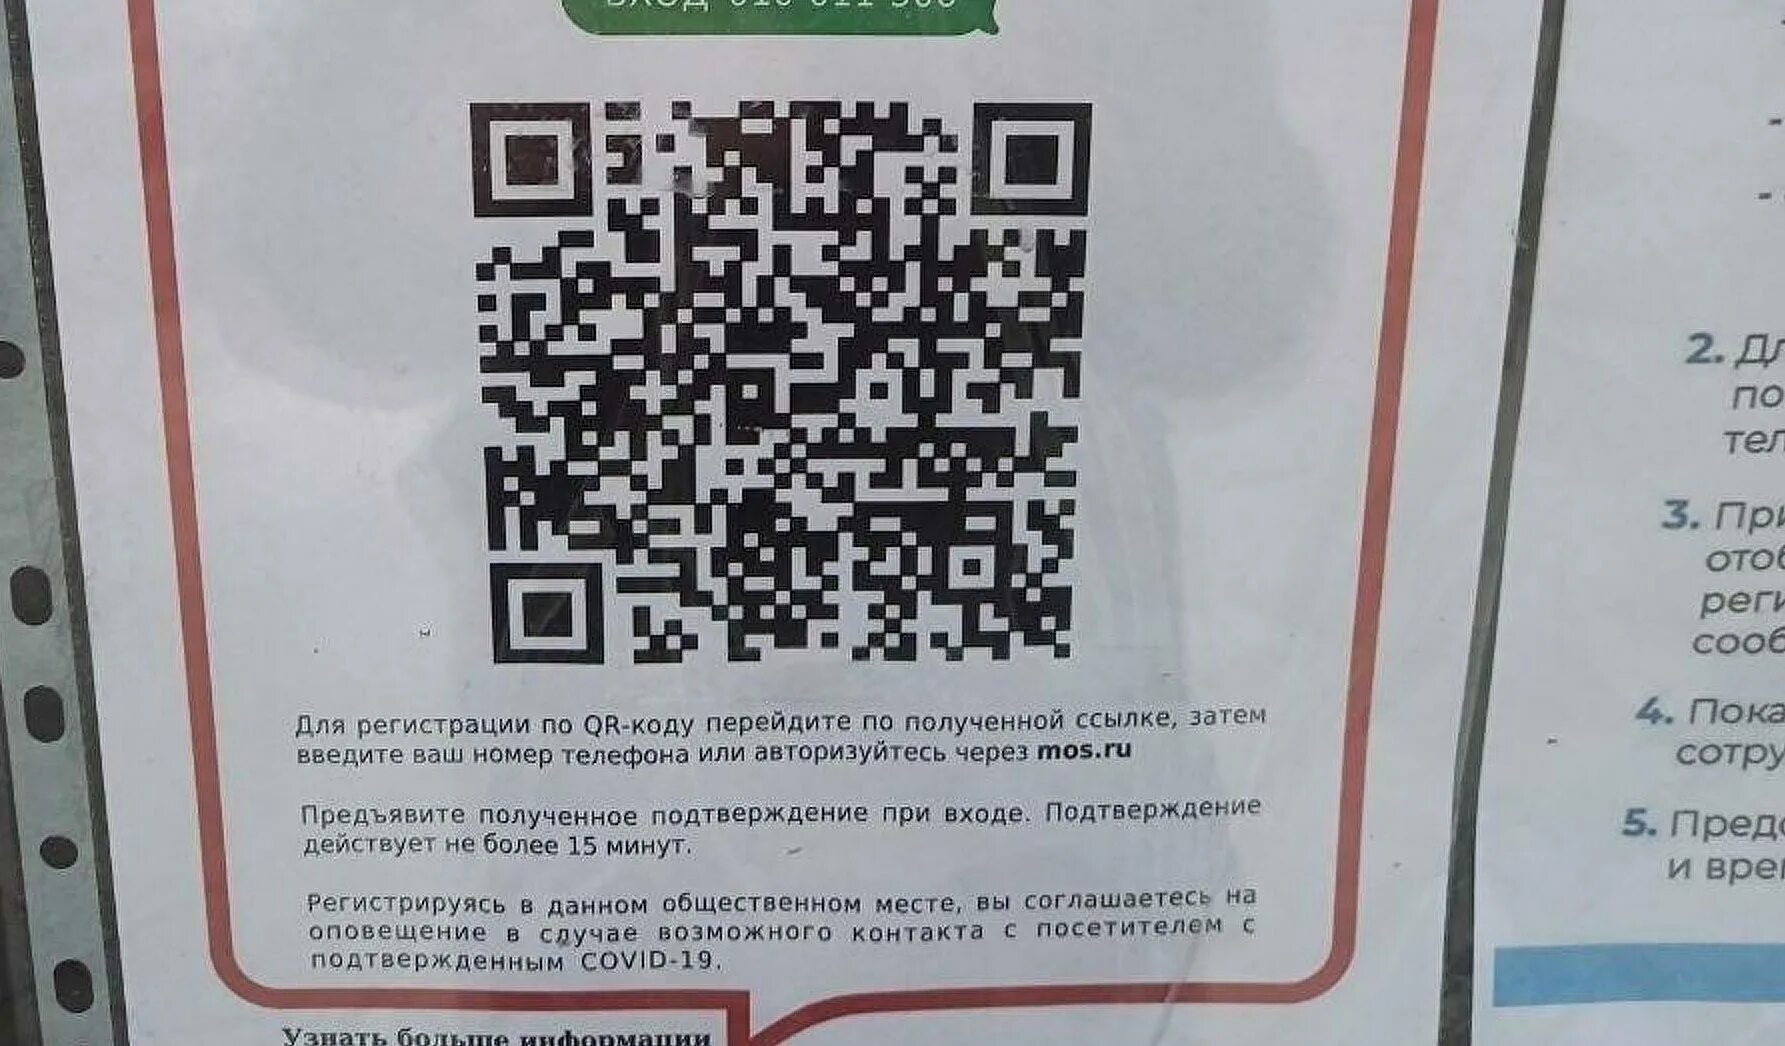 Не приходи qr код. QR код. Таблички с QR кодами. Российский QR код. Плакат с QR кодом.